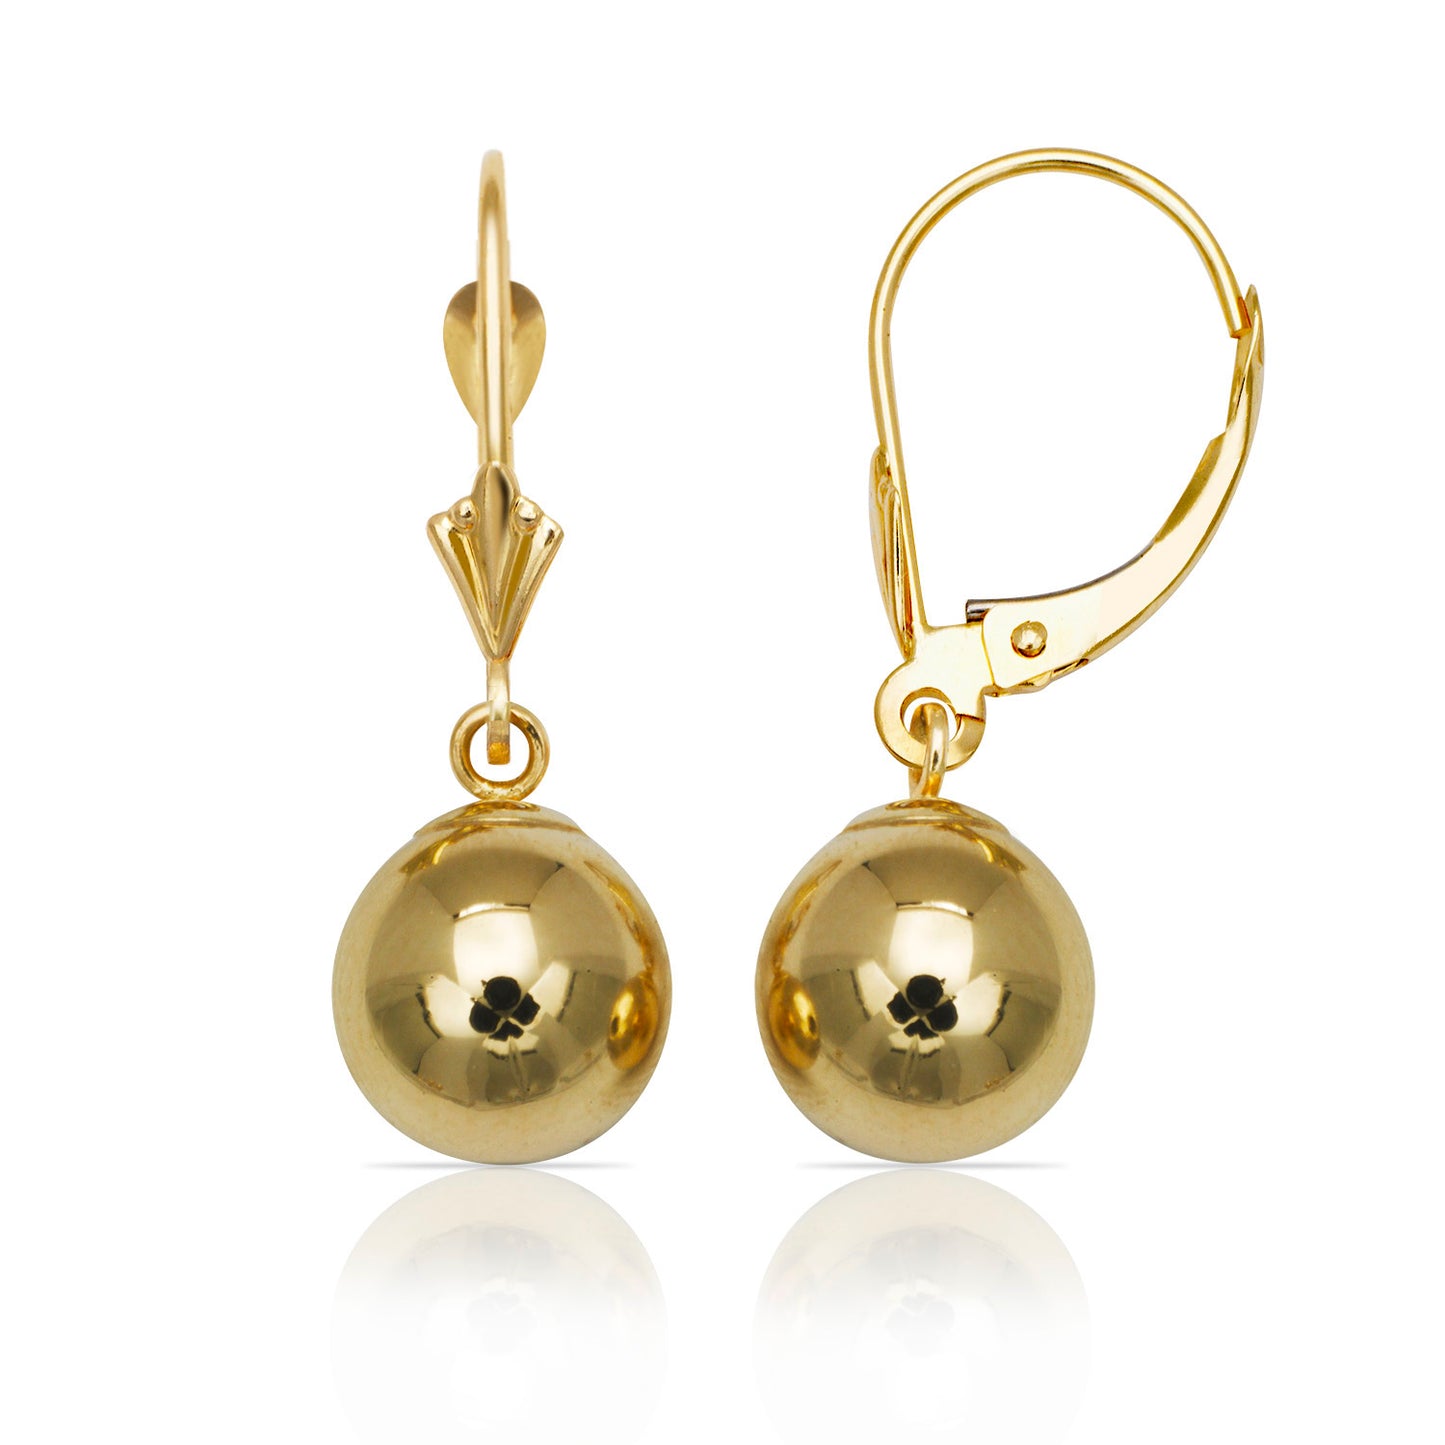 Minimalist 14K Gold Ball Leverback Earrings